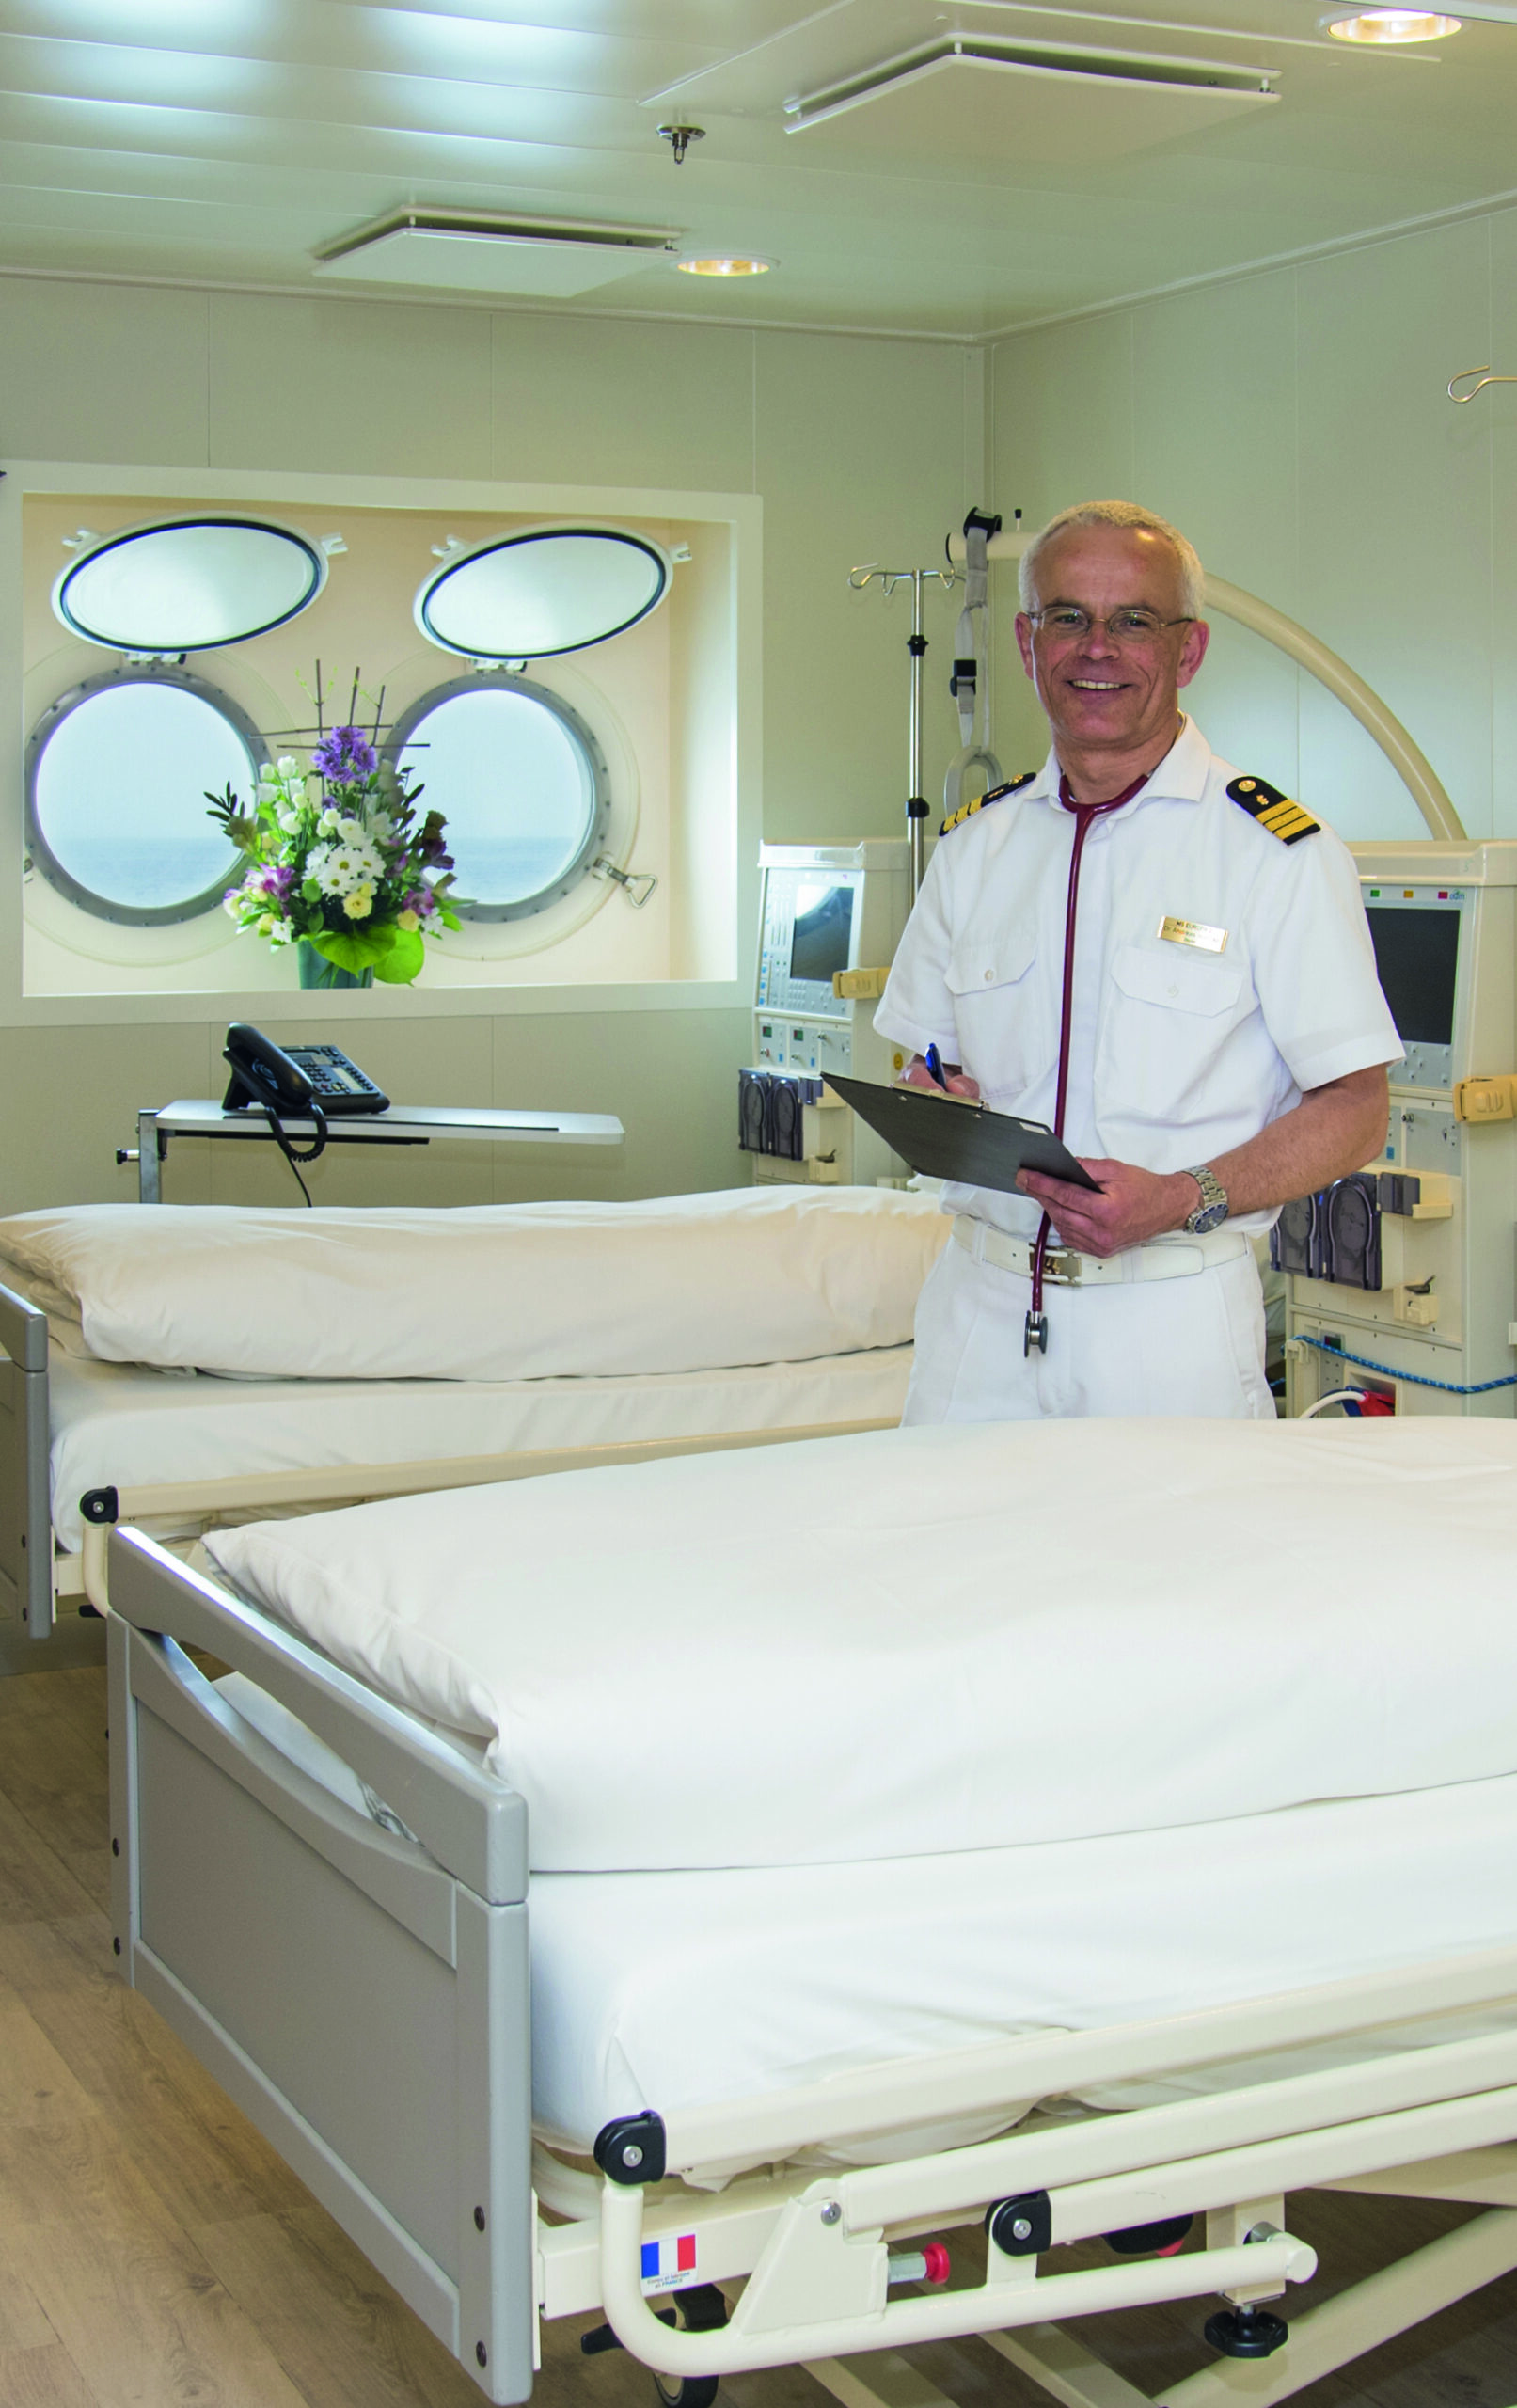 dialysis technician cruise ship jobs